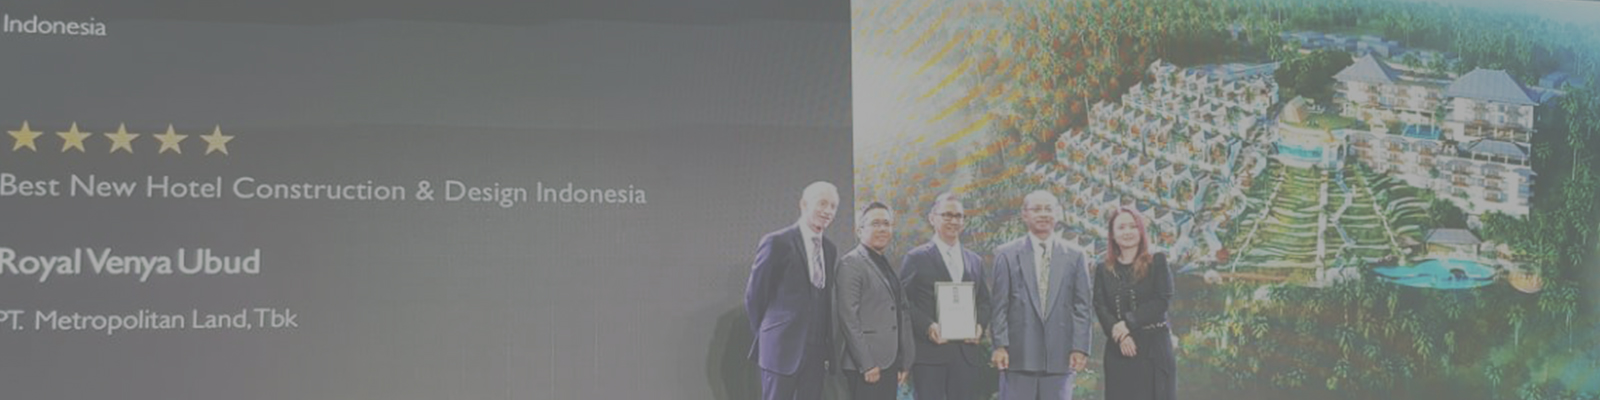 Royal Venya Resort Wins Asia Pacific Property Awards!